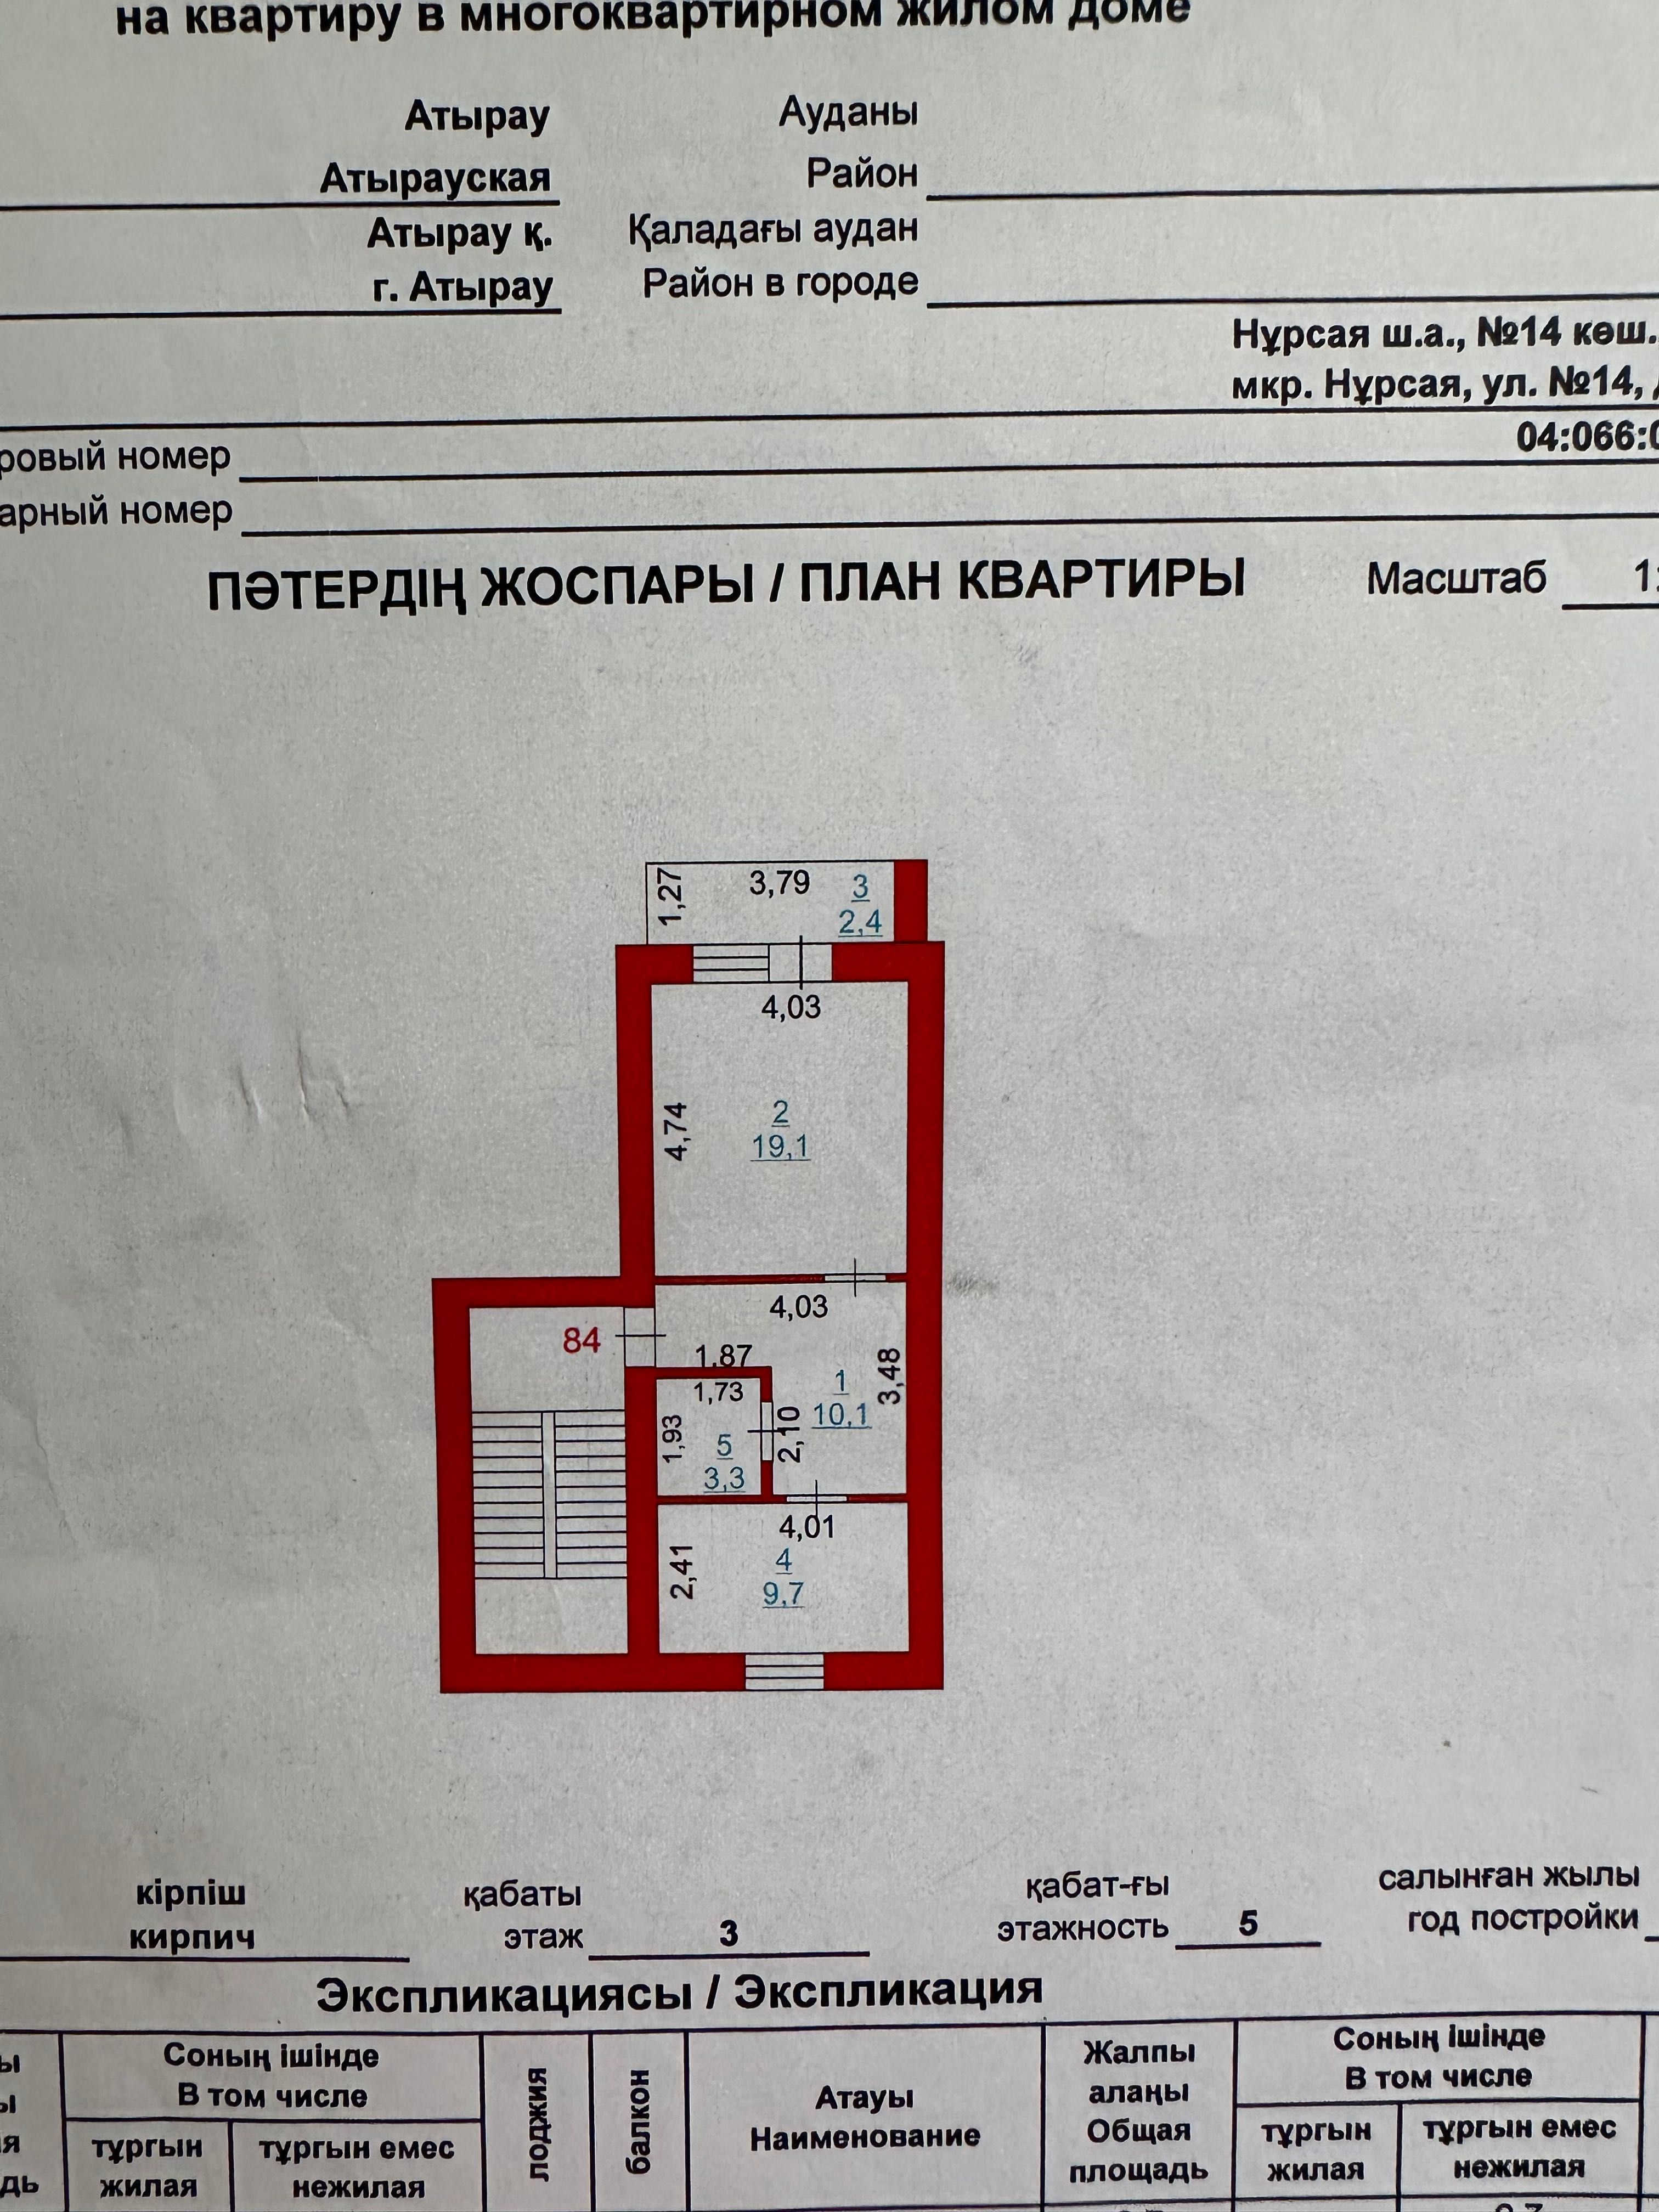 продается 1 комнатная квартира в мкр. Нурсая,ул. Таумуш Жумагалиева